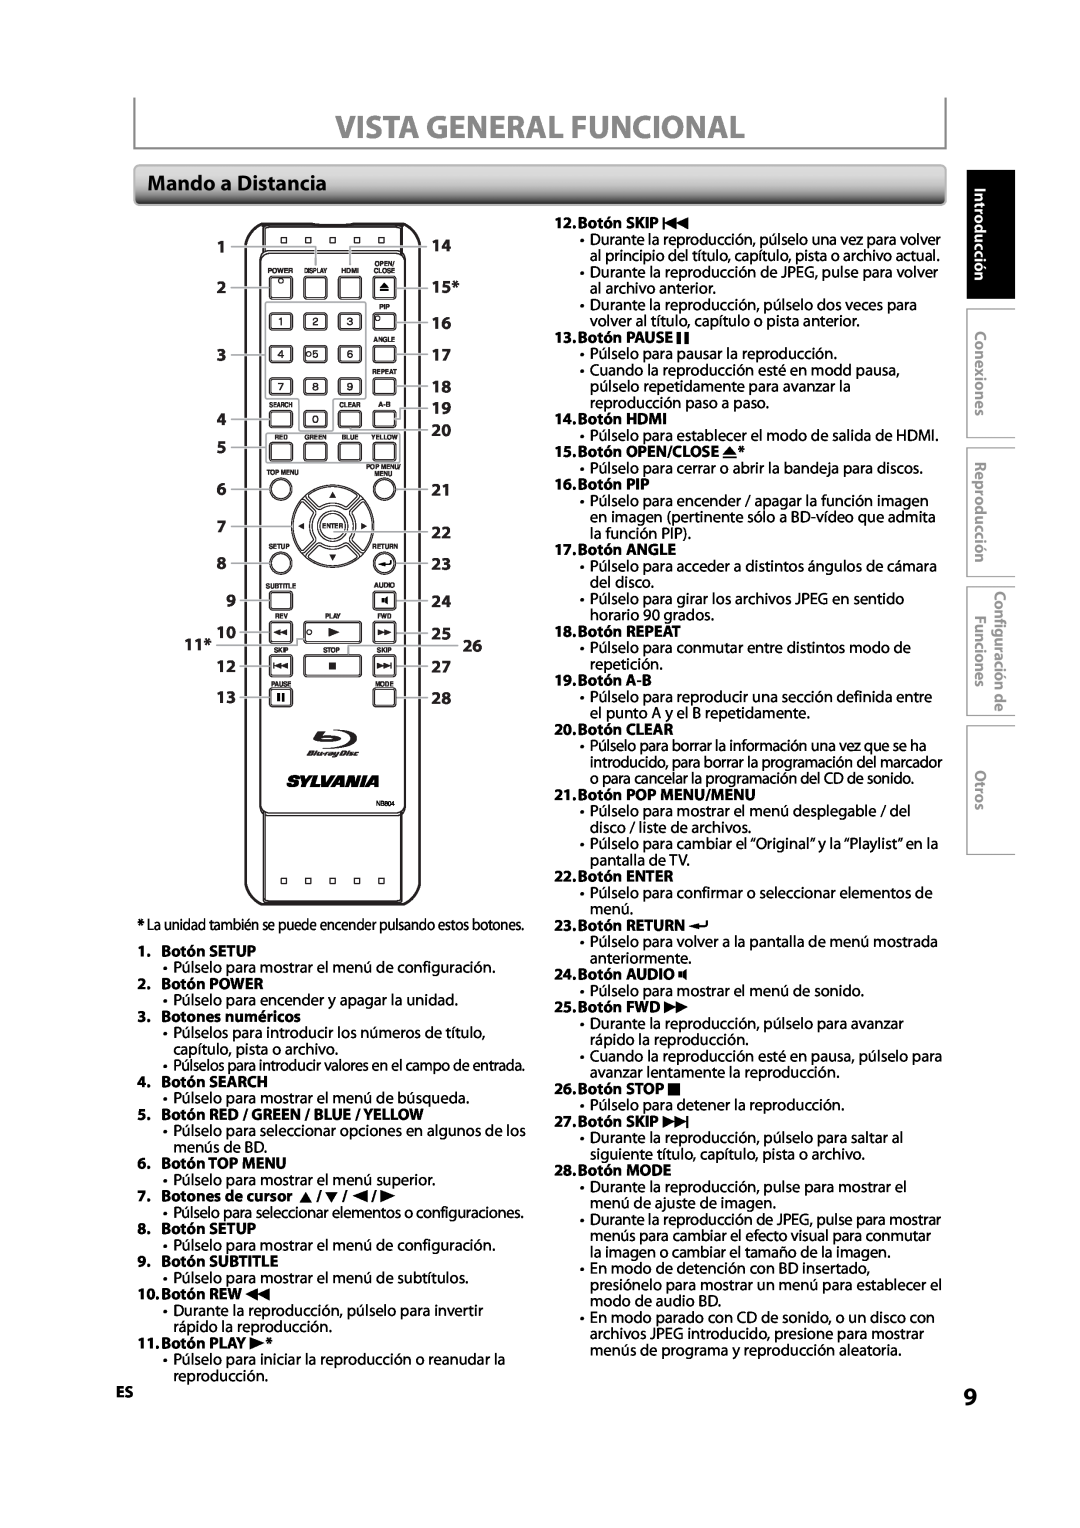 Sylvania NB500SL9 owner manual Vista General Funcional, Mando a Distancia, 12.Botón SKIP H, 13.Botón PAUSE F, 14.Botón HDMI 